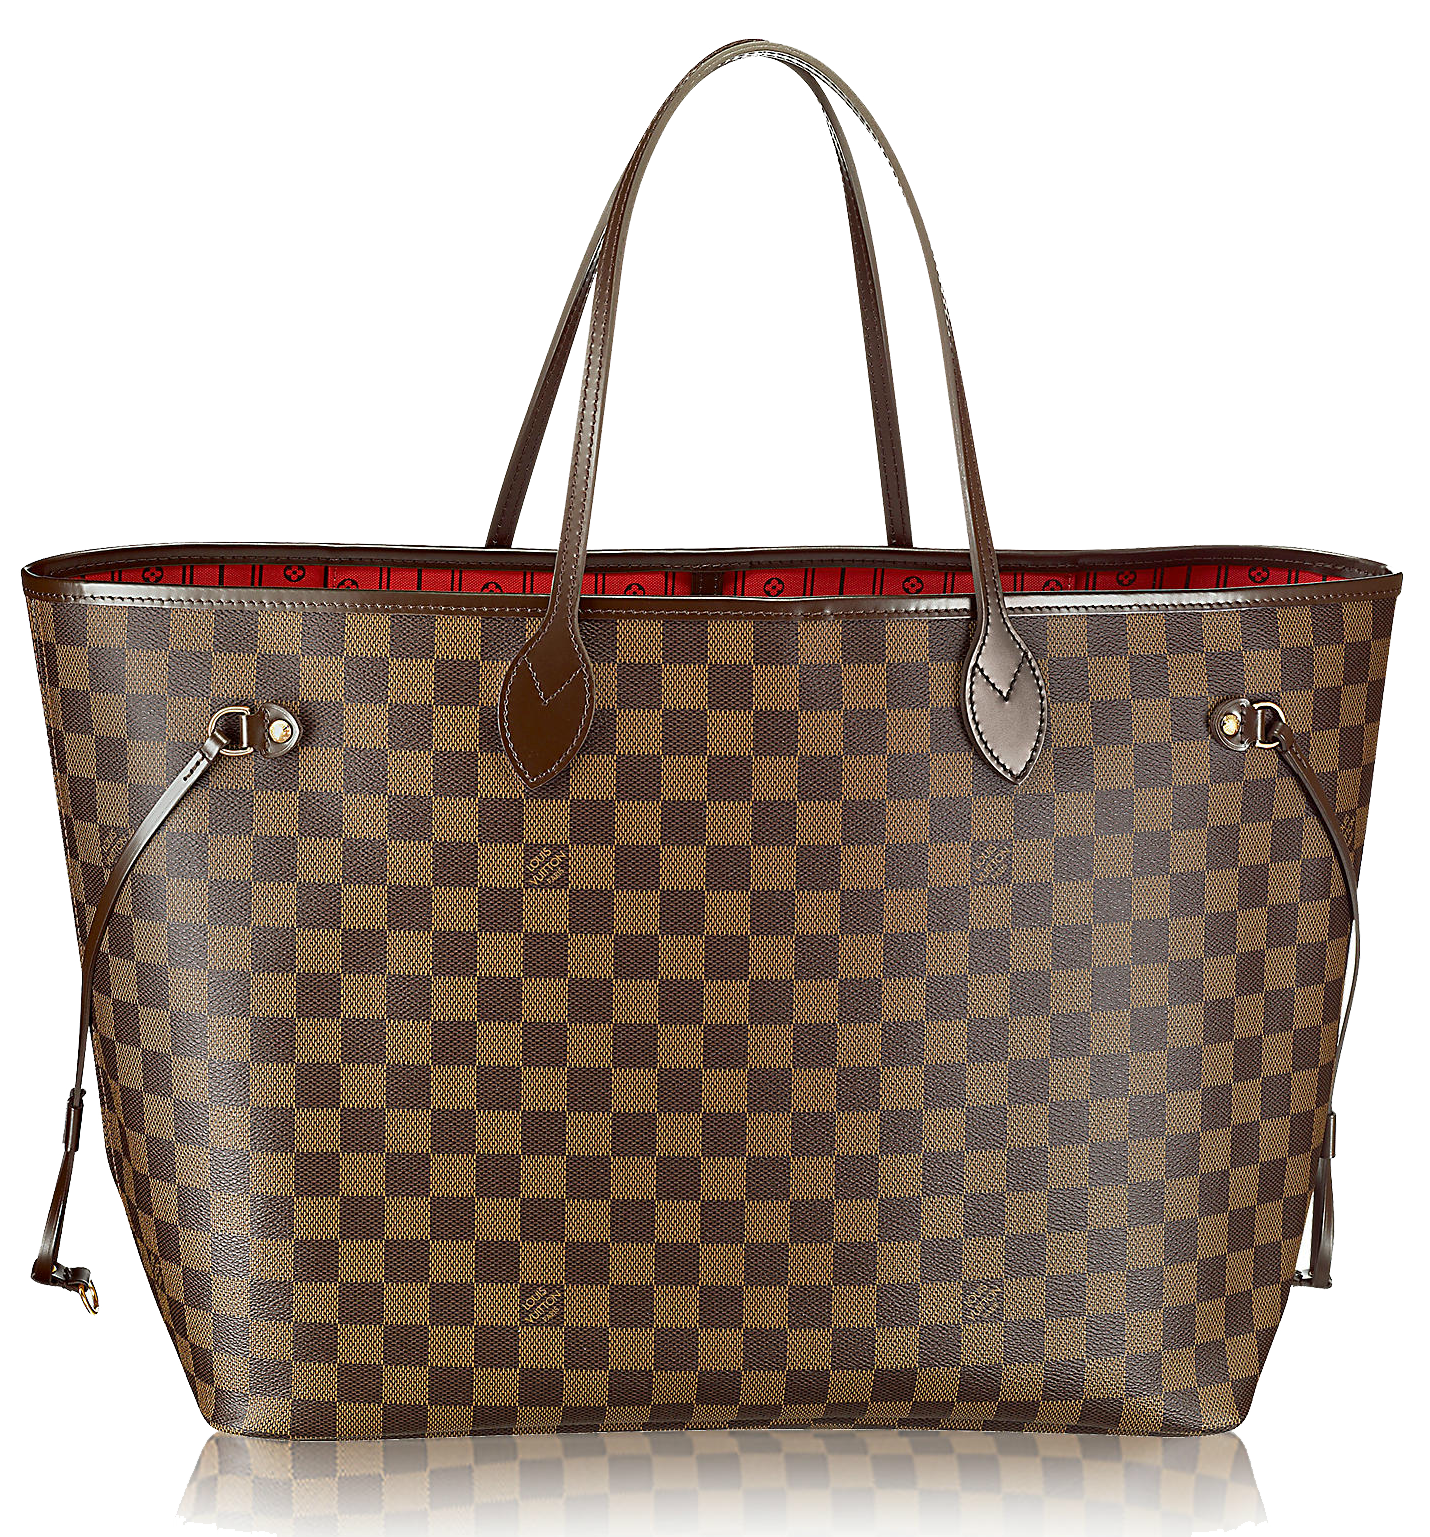 Louis Vuitton Handbag Fashion Leather - Purse PNG Transparent Image png download - 1430*1537 ...